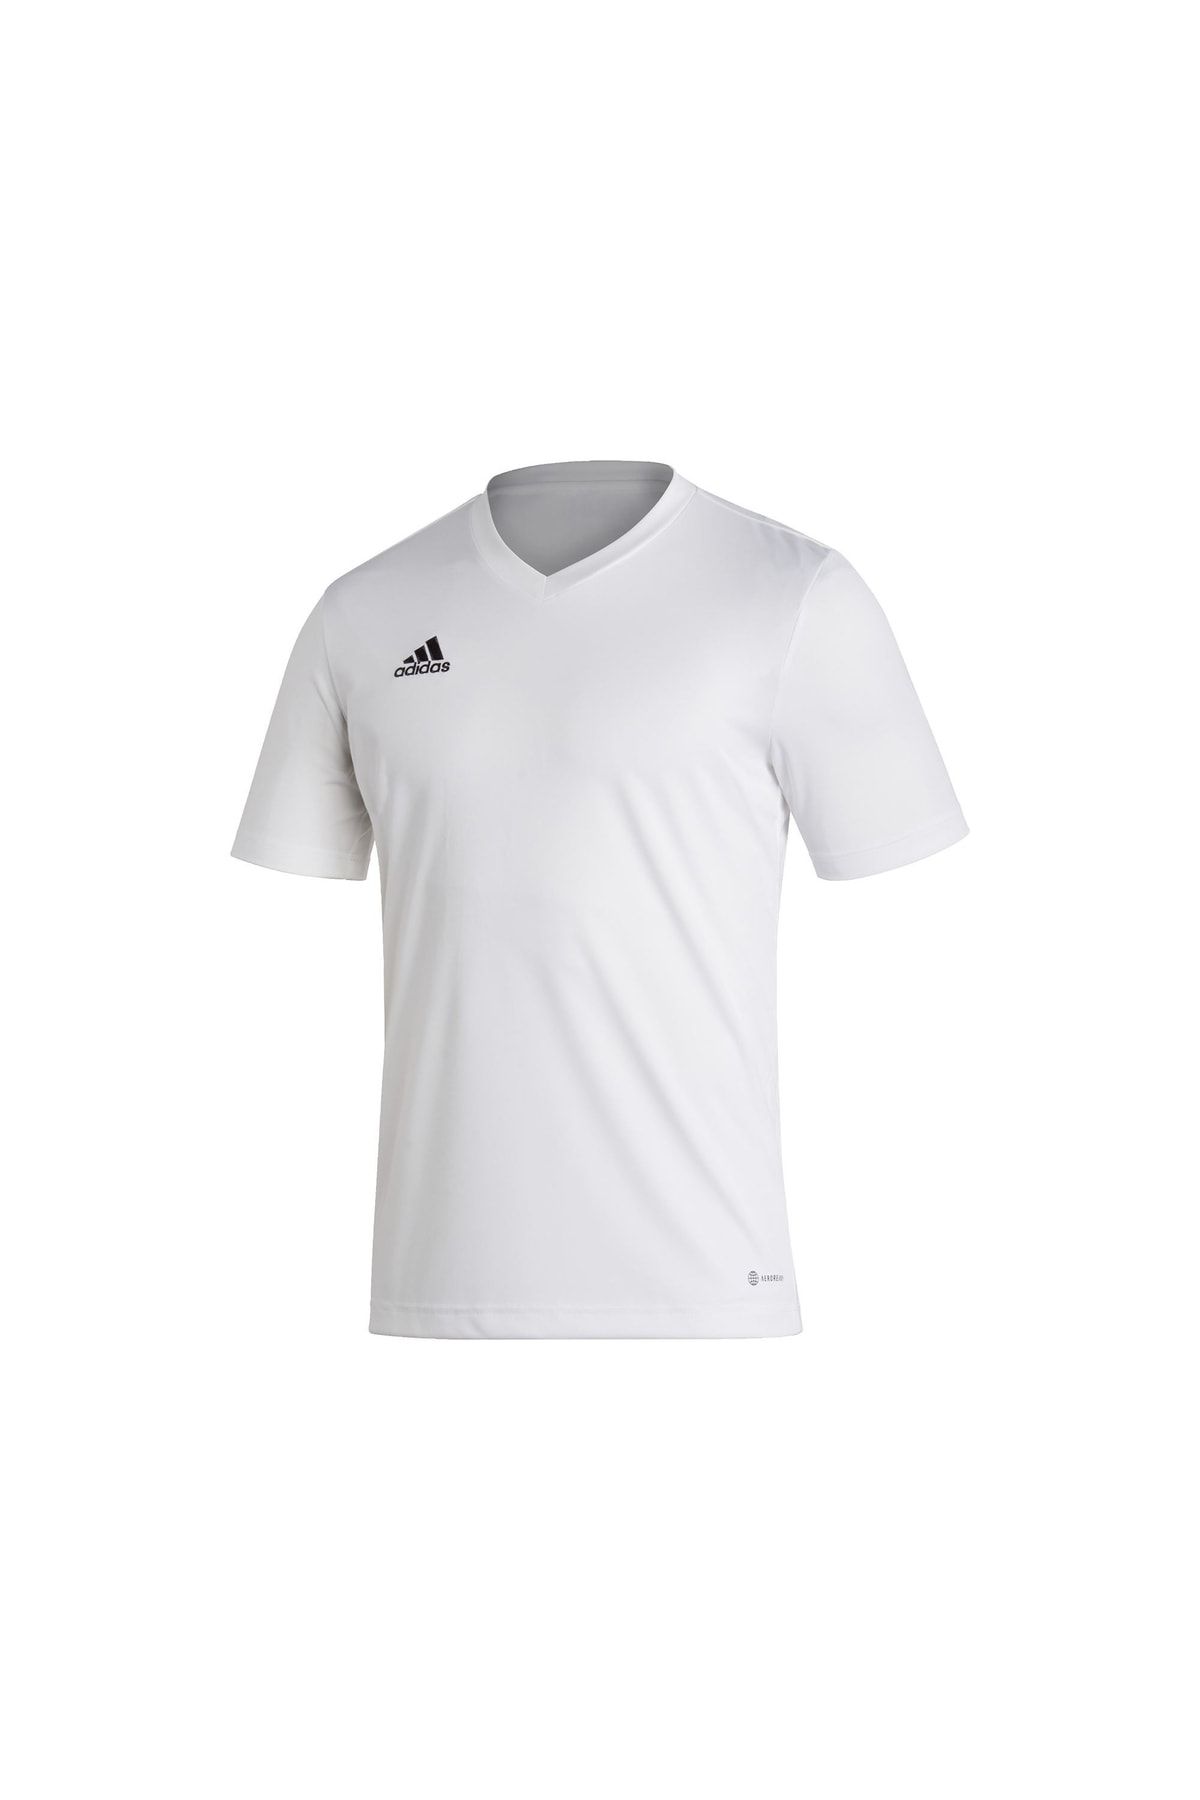 adidas Ent22 Jsy Erkek Futbol Forması Hc5071 Beyaz